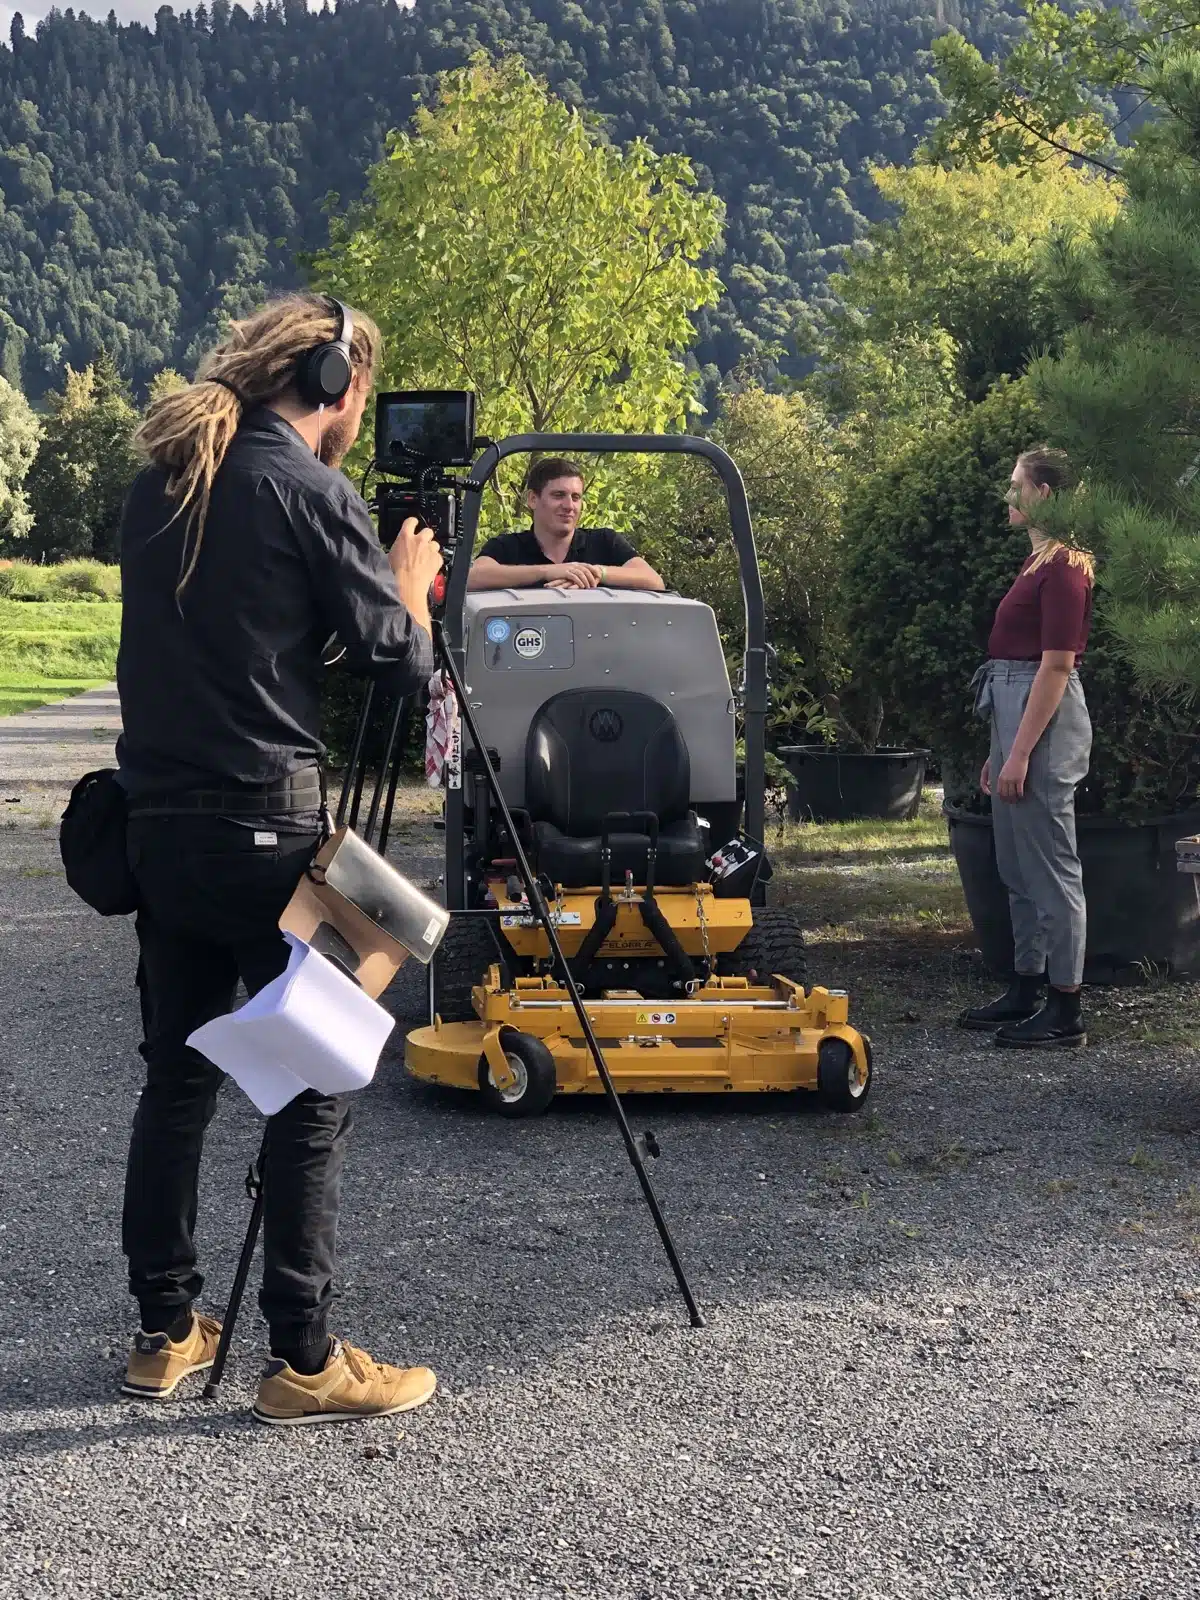 Filmteam be der Arbeit mit schaupielerin in einem Gartenbaubetrieb in der schweiz switzerland in der nähe von basel mit einem grossen Rasenmäher auf dem Bild.